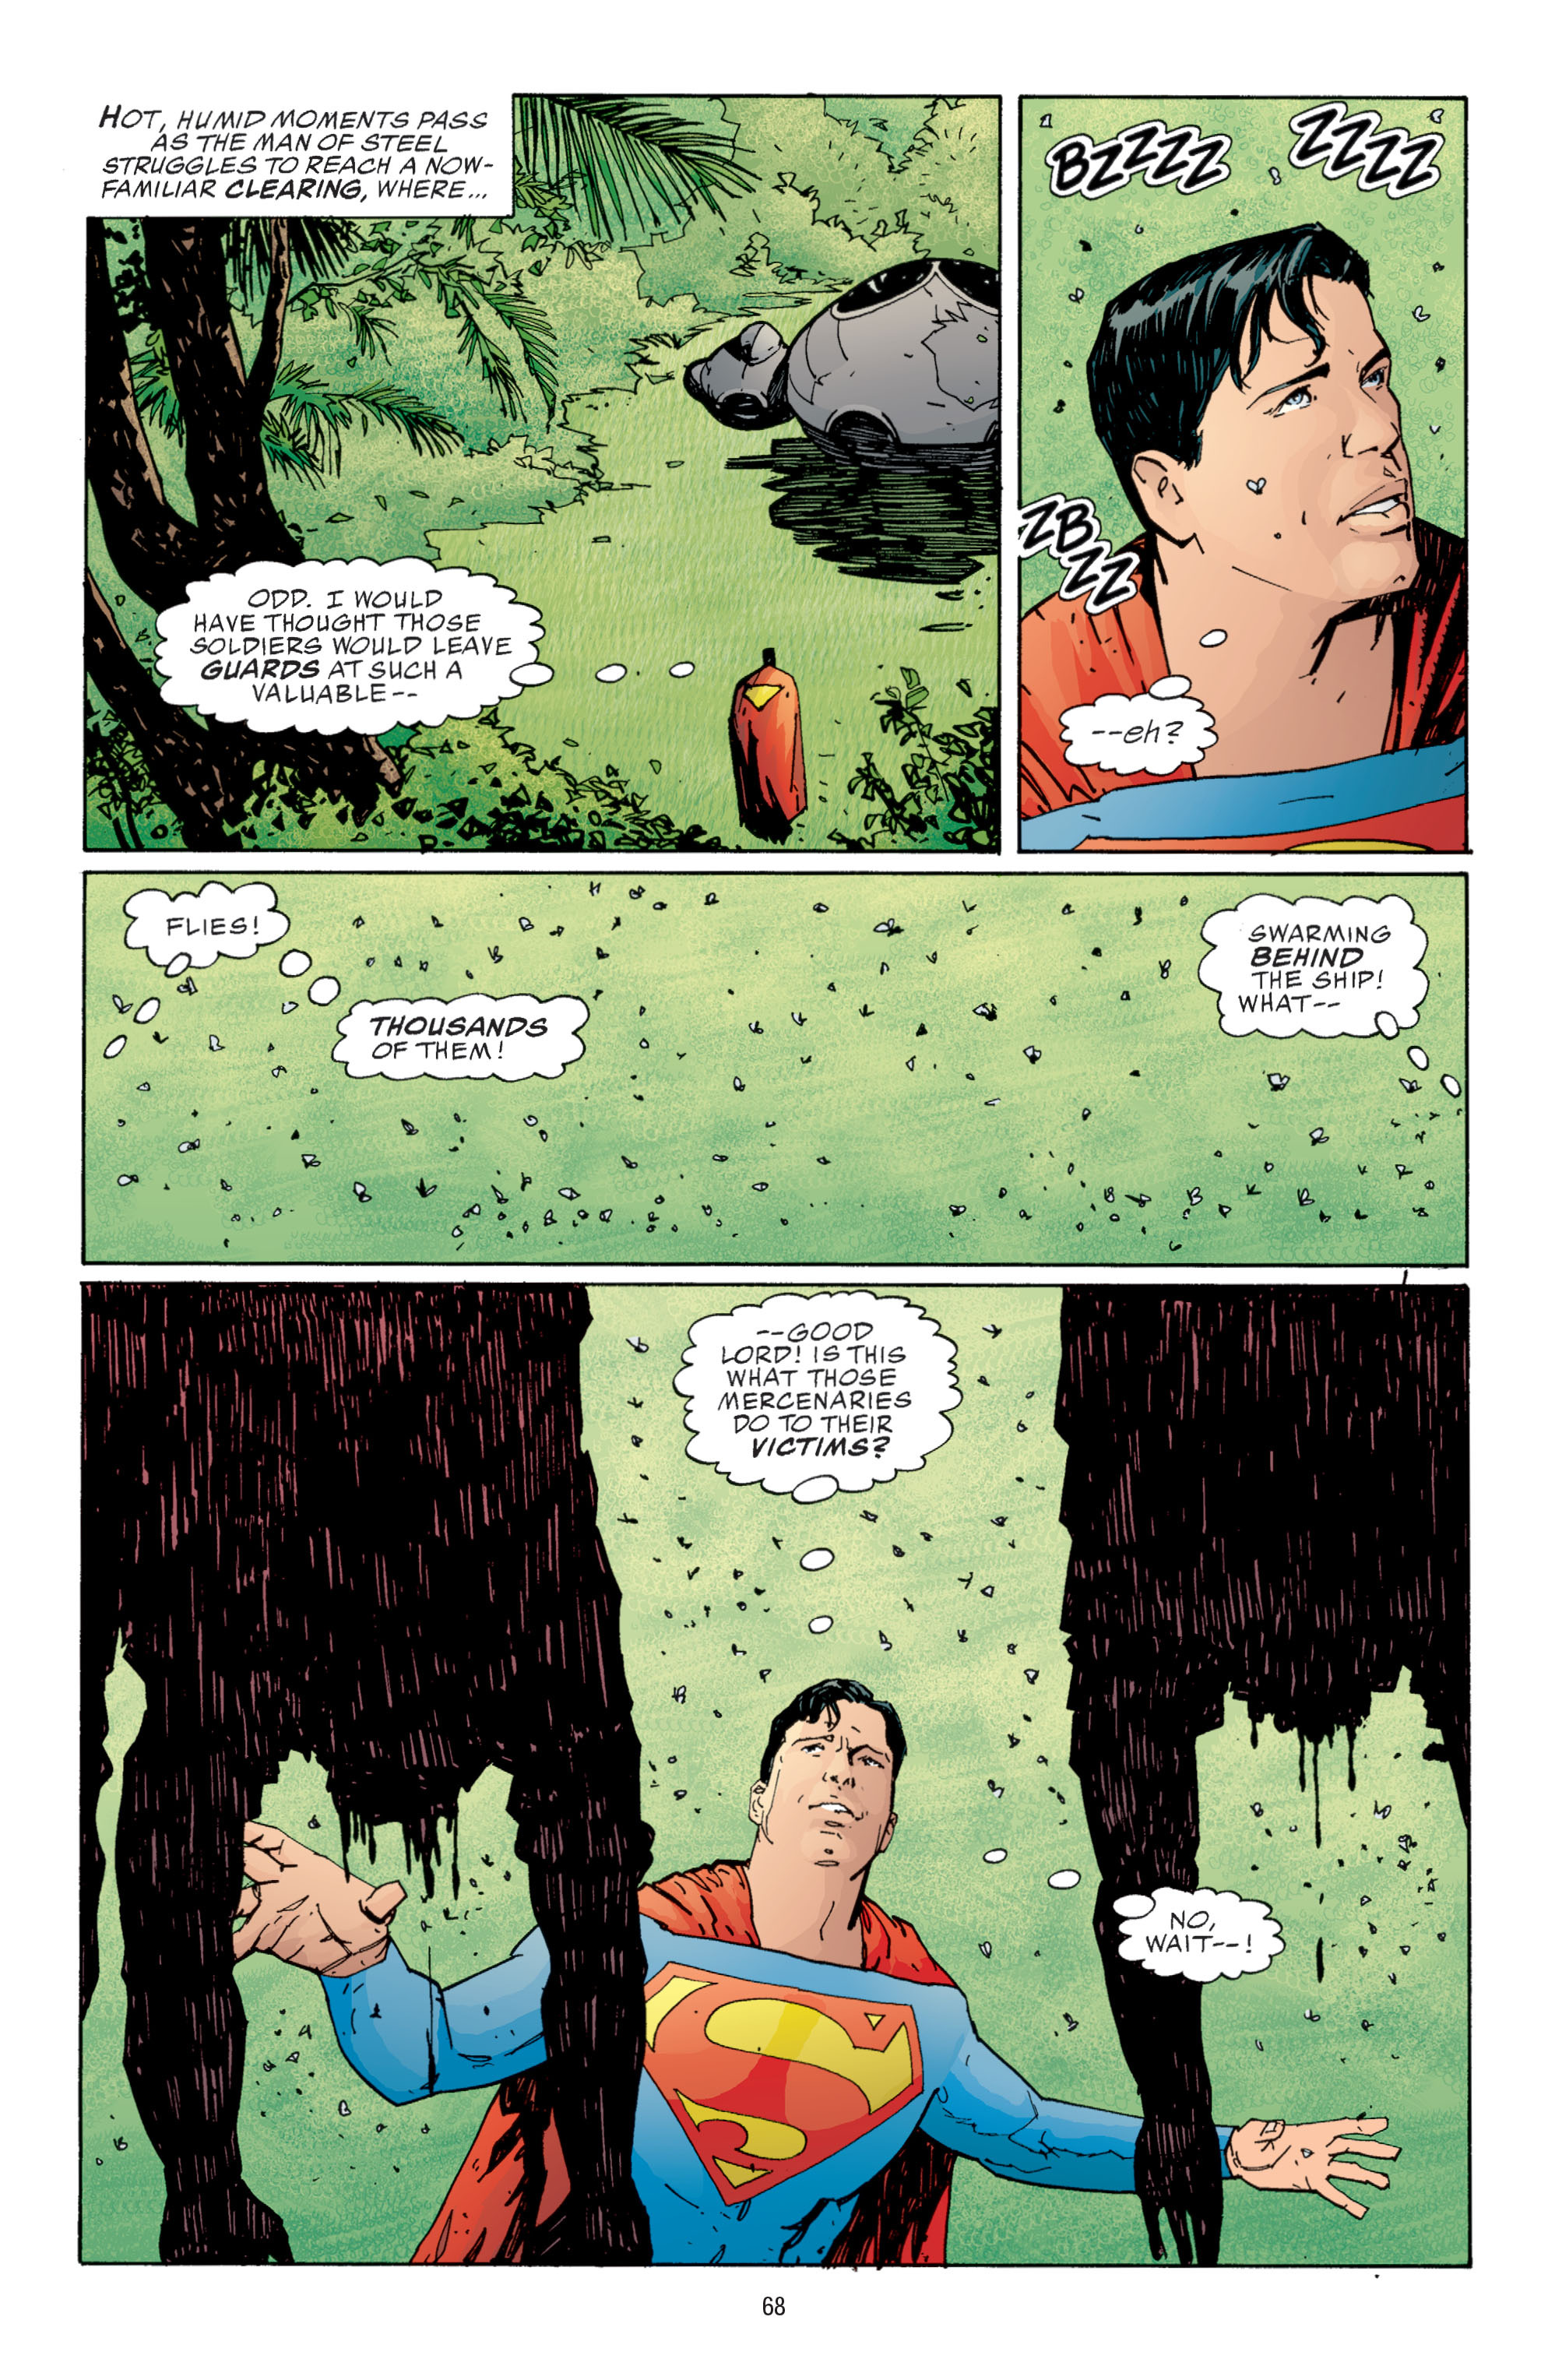 DC Comics/Dark Horse Comics: Justice League Full #1 - English 66